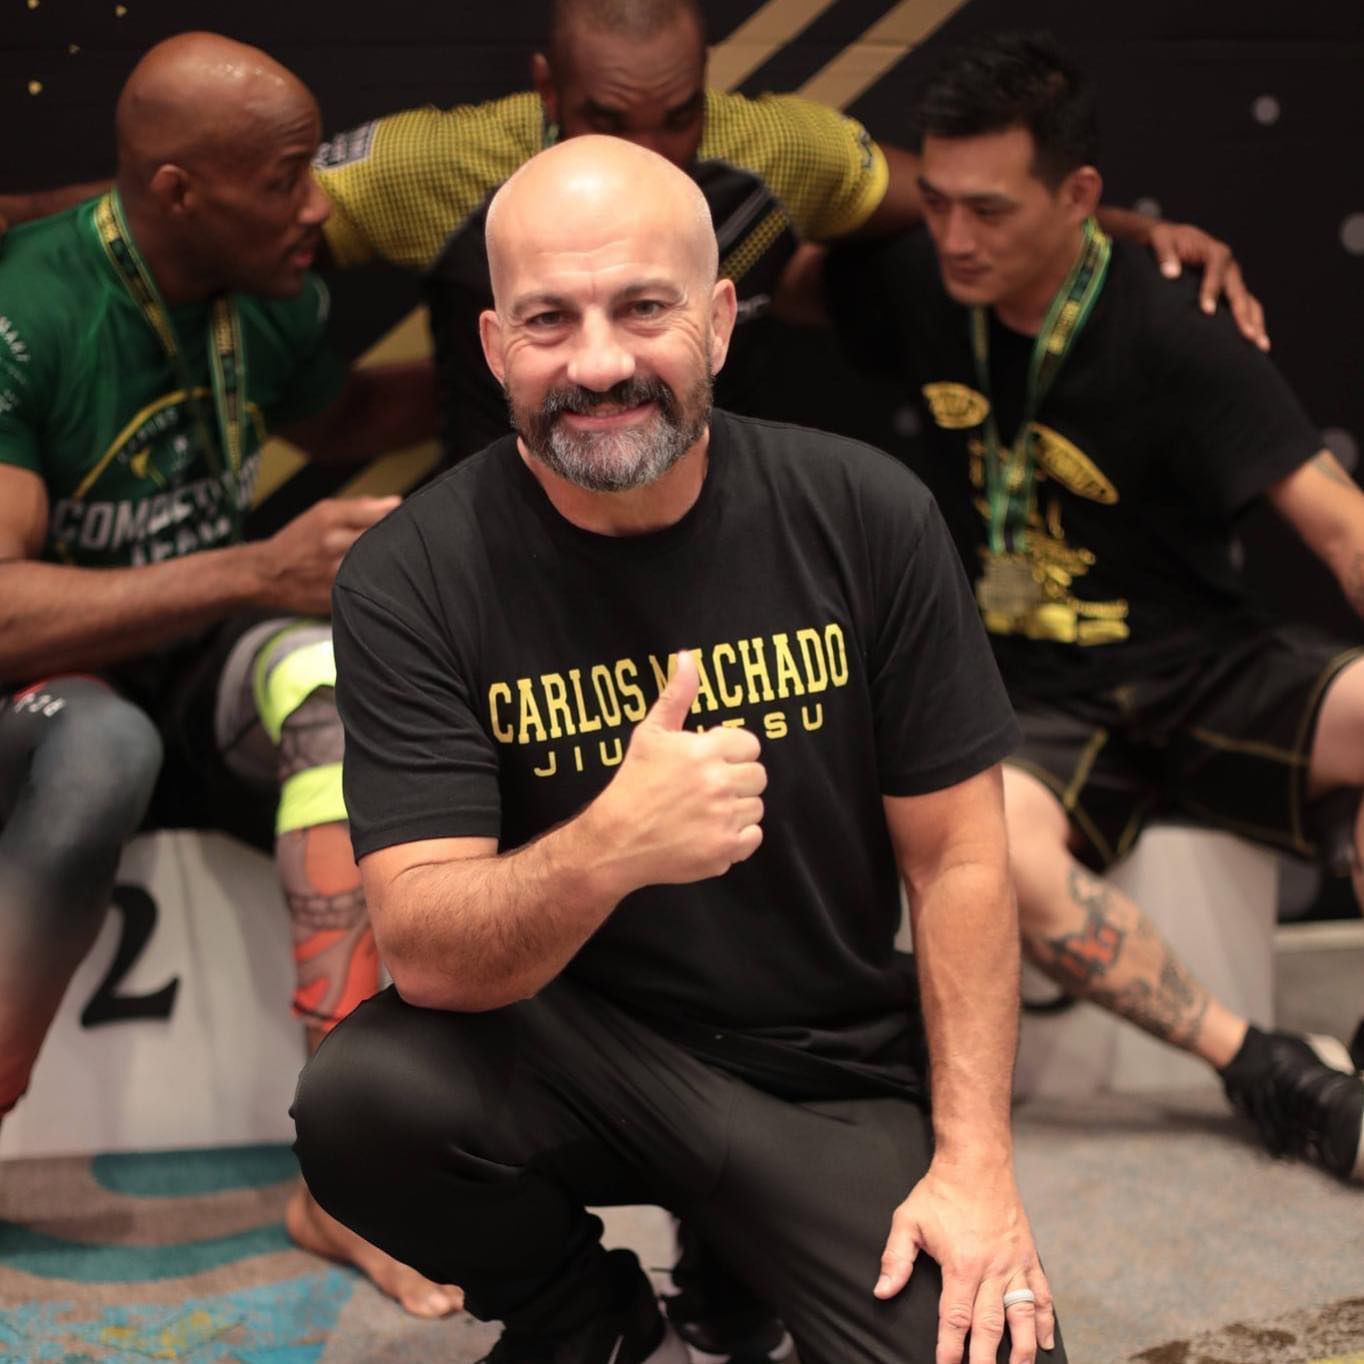 A man wearing a carlos machado shirt gives a thumbs up